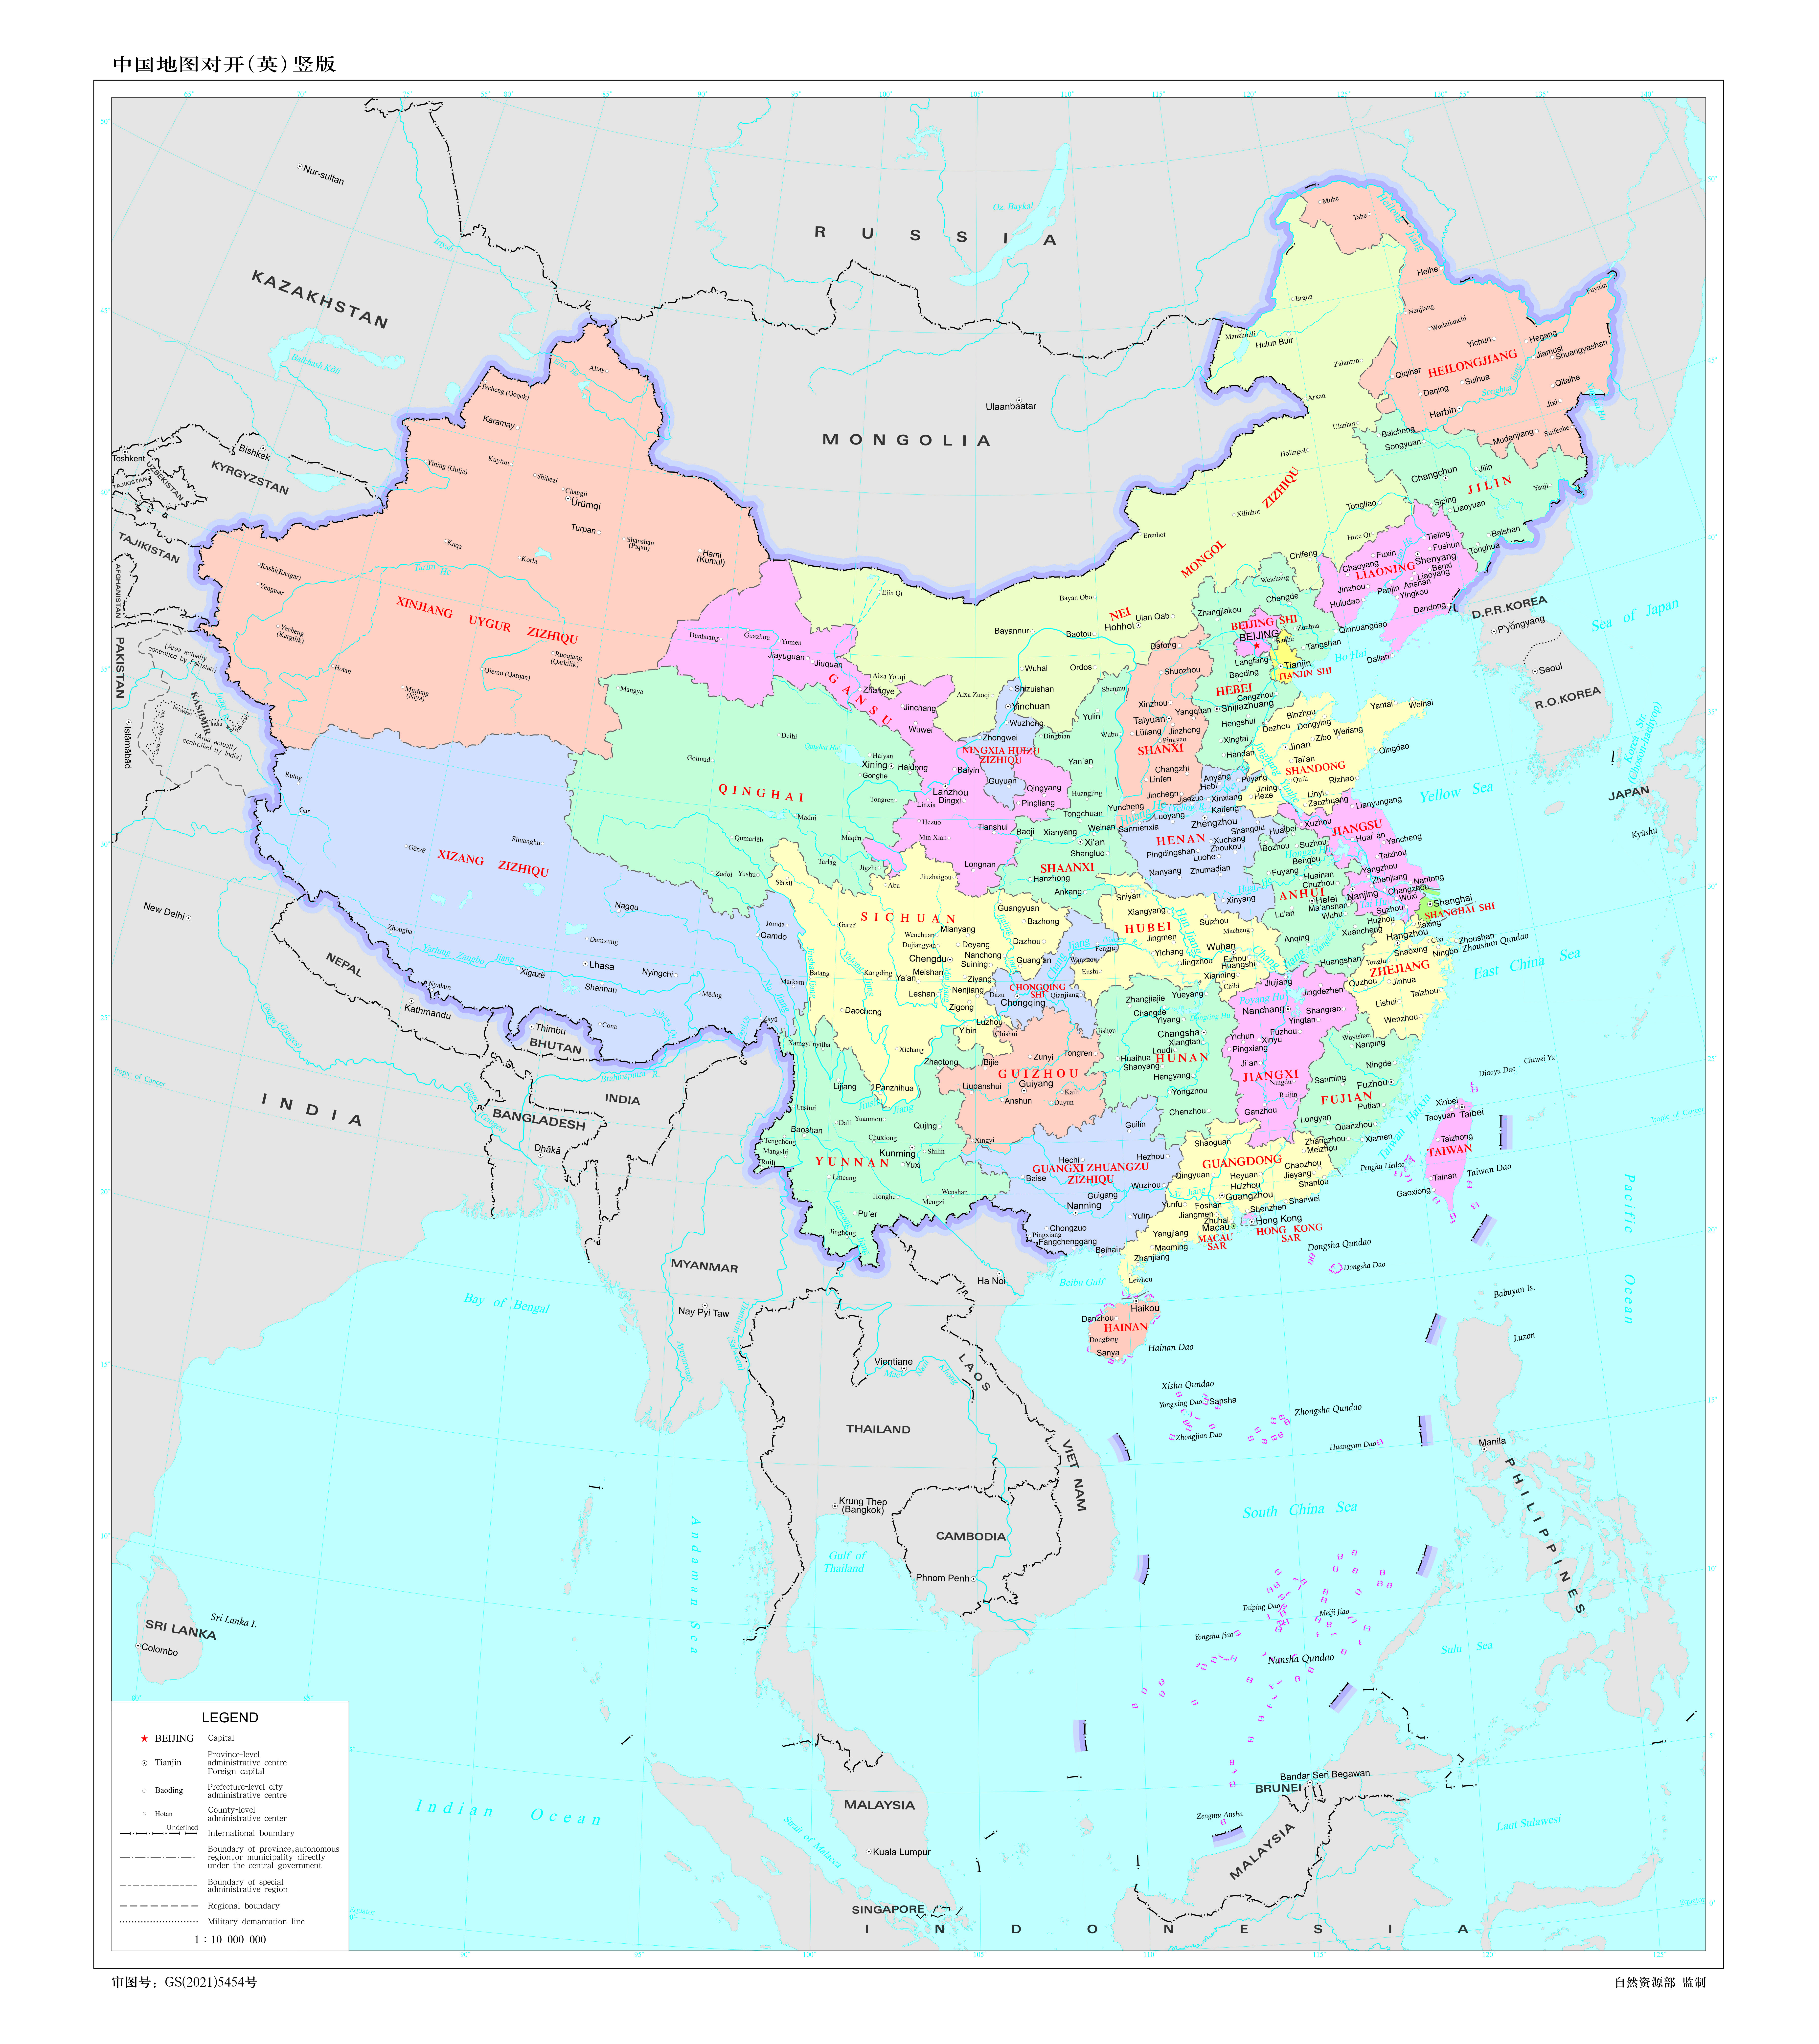 General 7356x8268 China Hong Kong Macau Taiwan portrait display map Tibet Asia propaganda